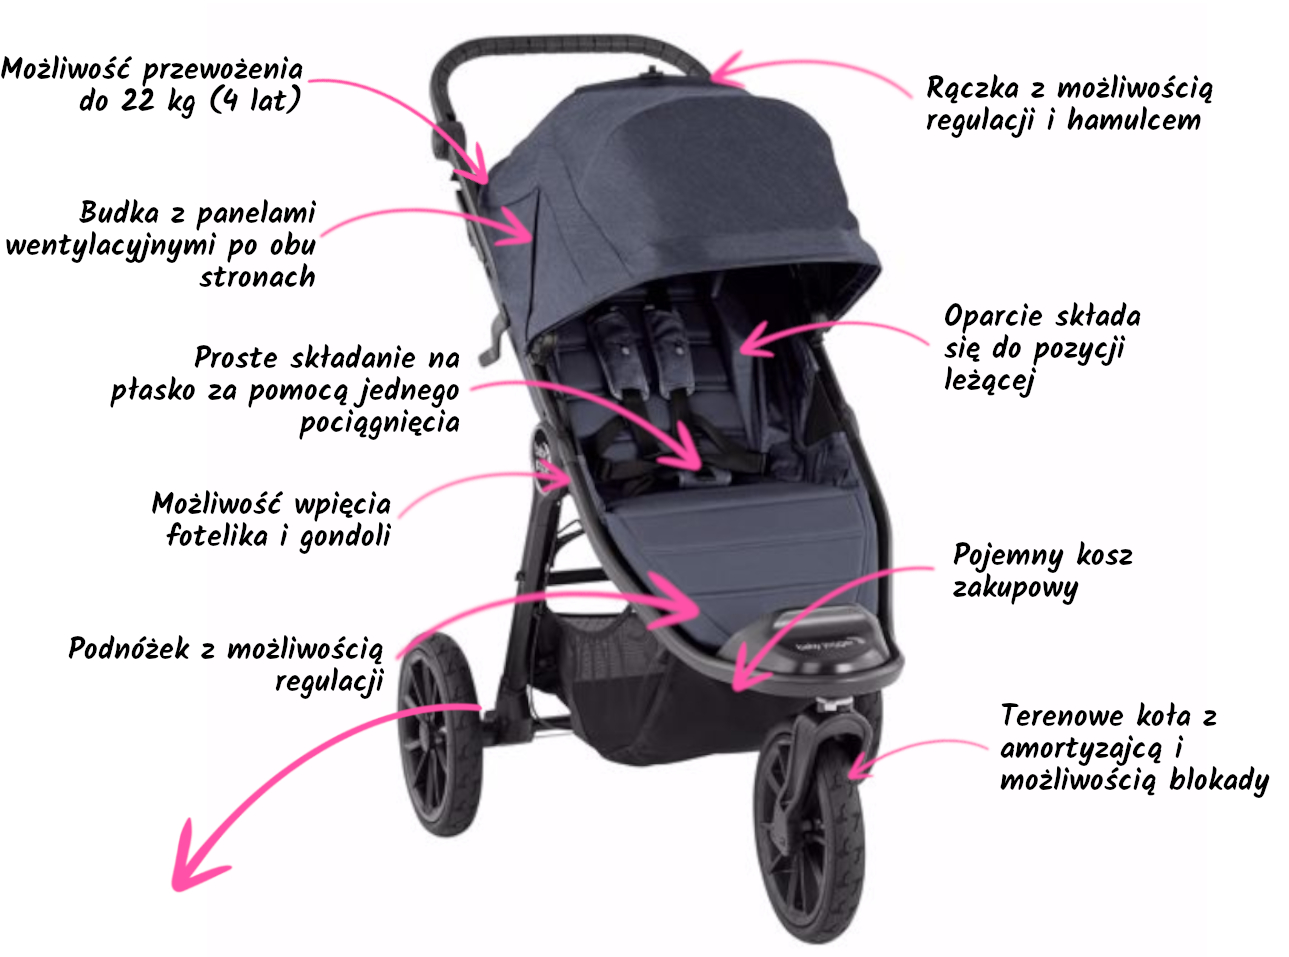 Gøre husarbejde gidsel hierarki Baby Jogger City Elite 2 - wózek dla dziecka | Sklep BoboKing.pl